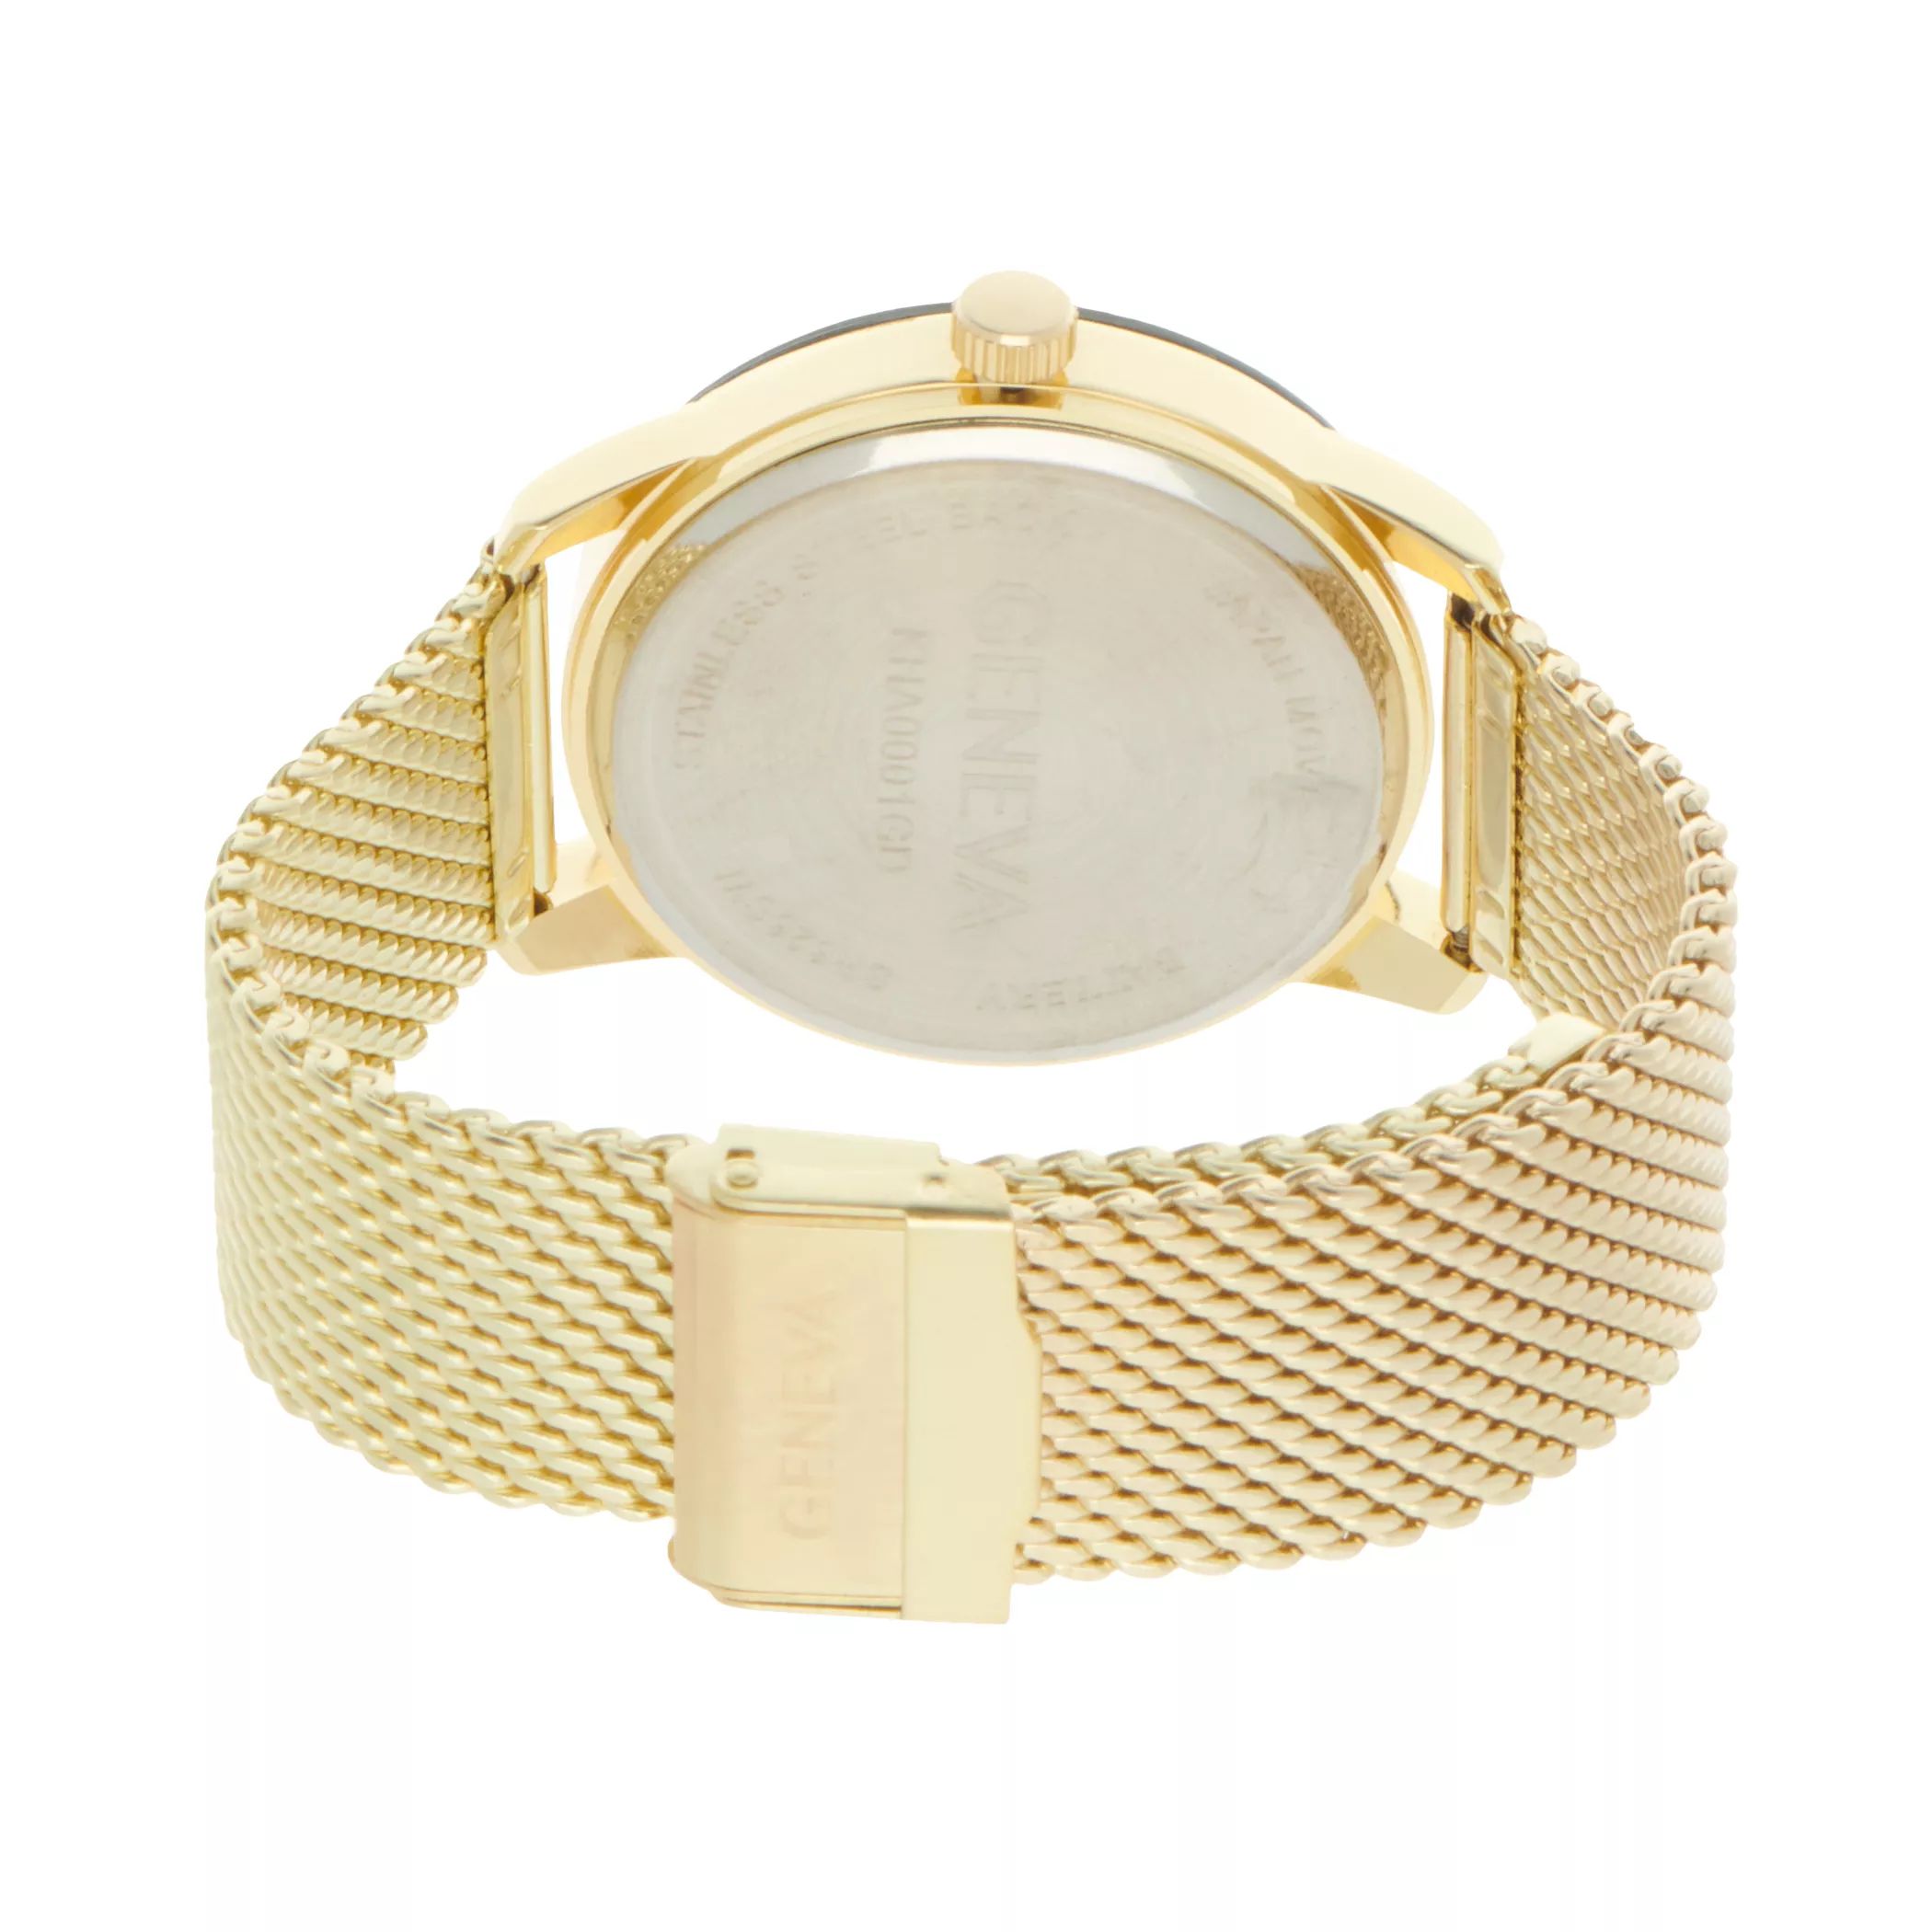 Мужские часы Diamond Accent с сеткой золотистого цвета - KHA0001GD Geneva цена и фото